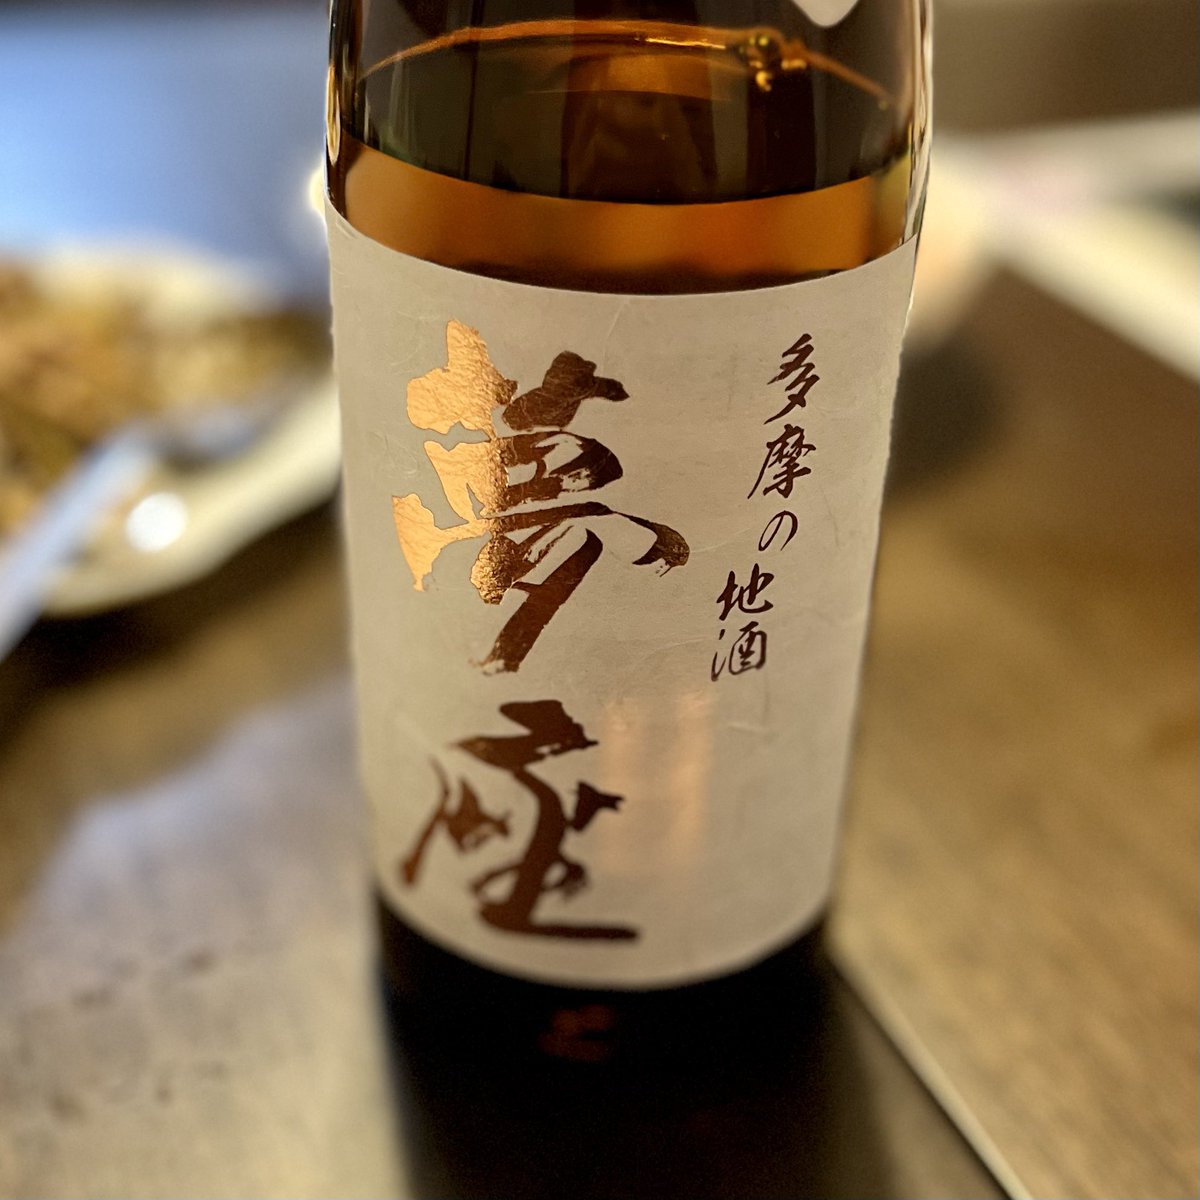 test ツイッターメディア - 今宵は、東京都福生市は石川酒造の「夢座　純米大吟醸」
香りにやや独特のクセがある。けど飲みにくいと言うわけではない https://t.co/hjaokOAtIk